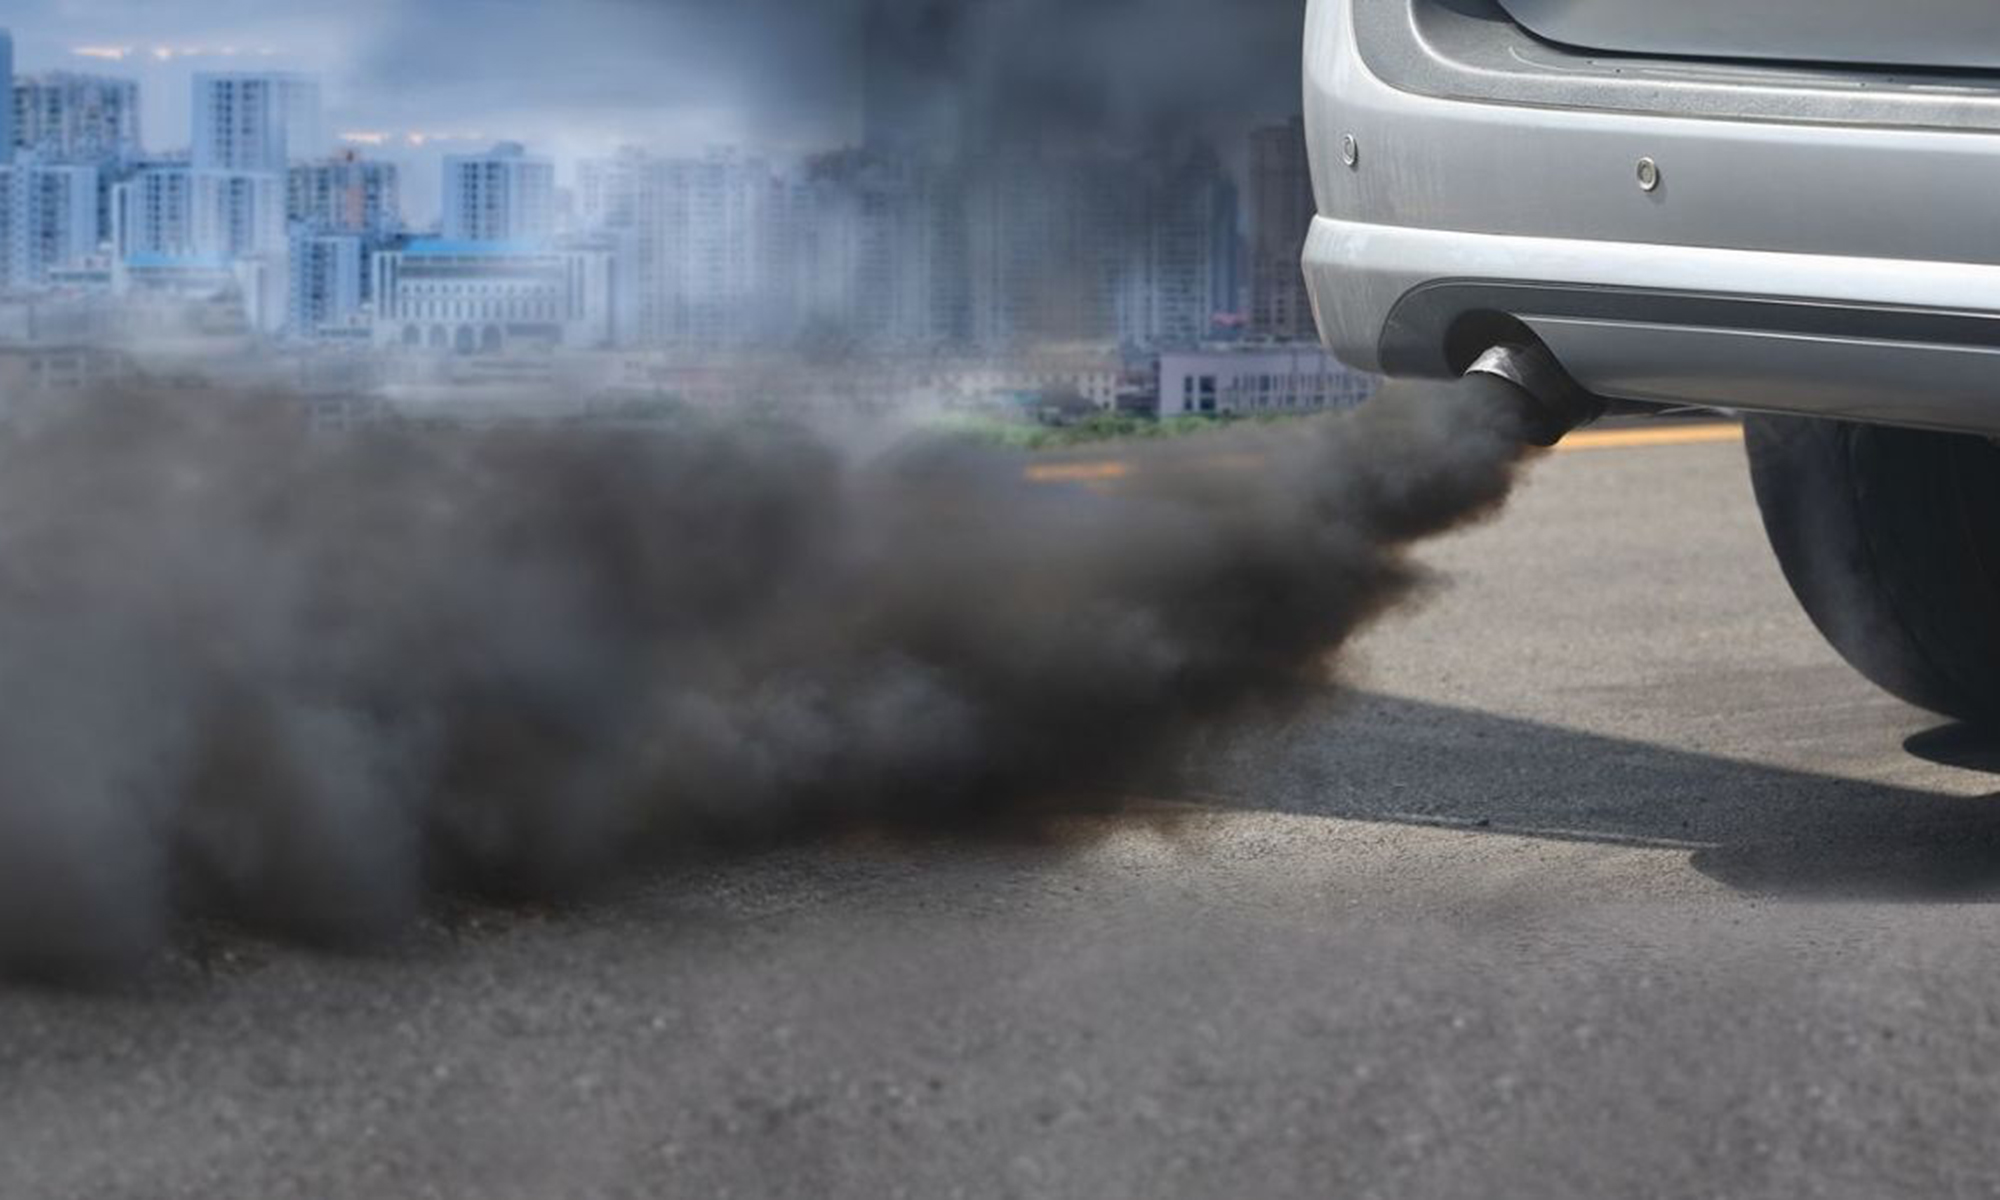 El mayor peso y potencia de los coches ha contrarrestado el avance tecnológico en el control de emisiones.